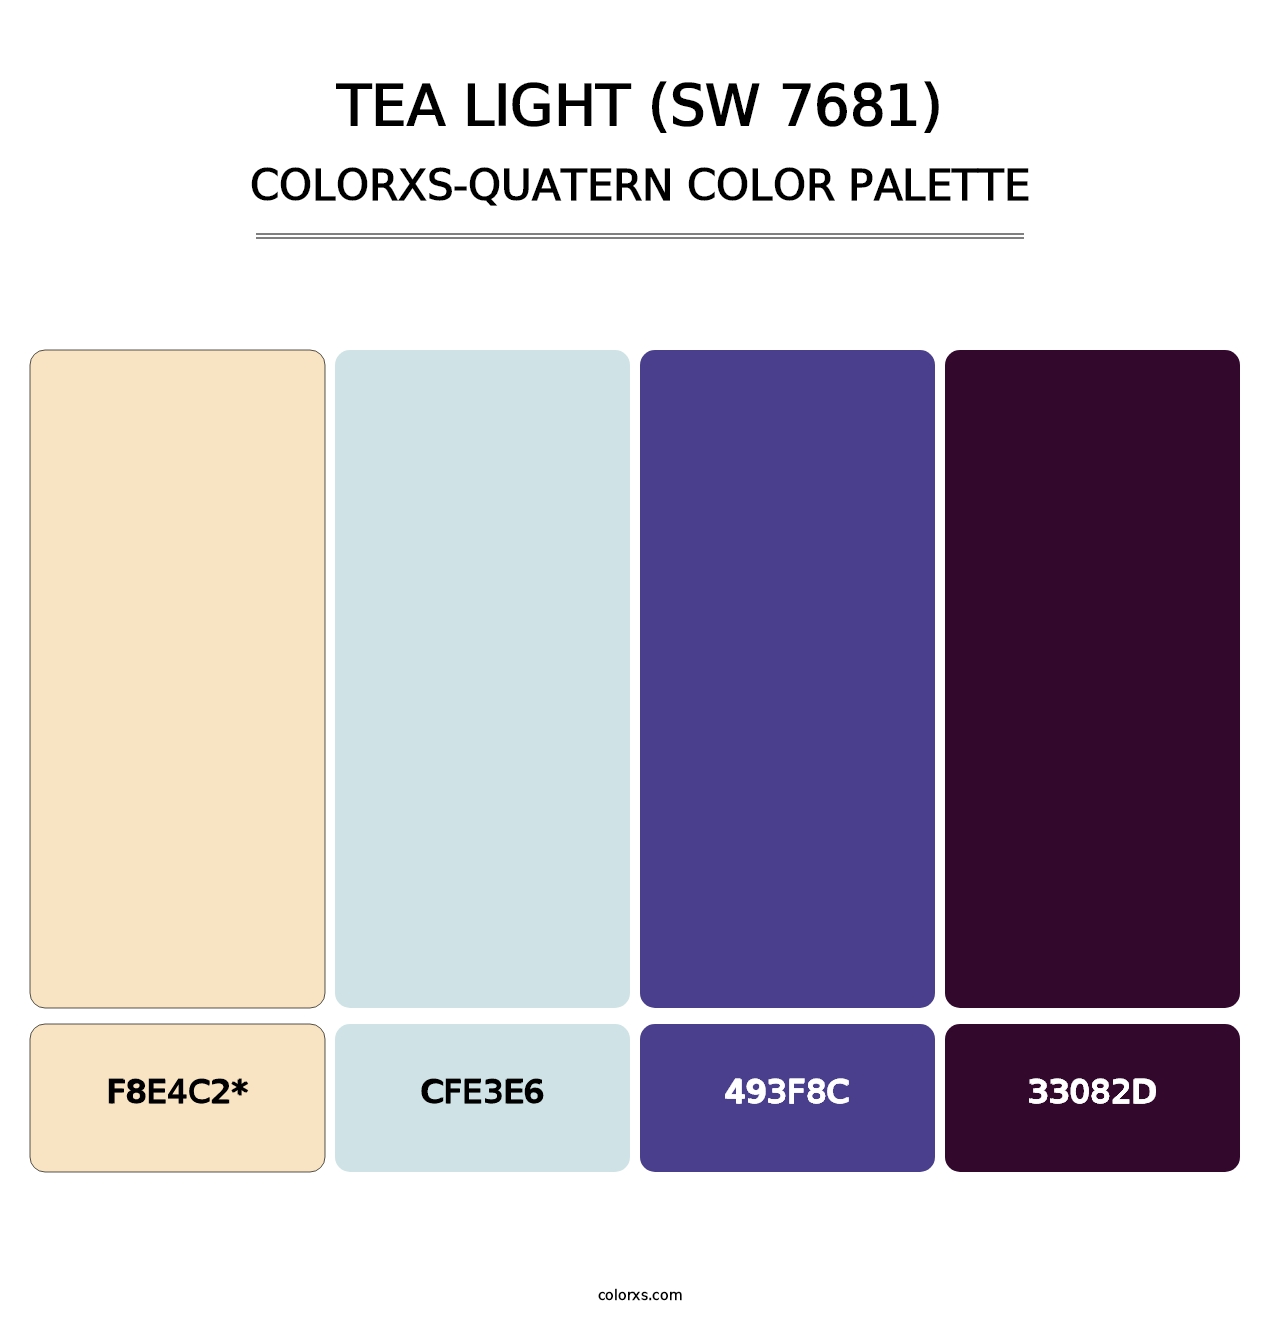 Tea Light (SW 7681) - Colorxs Quatern Palette